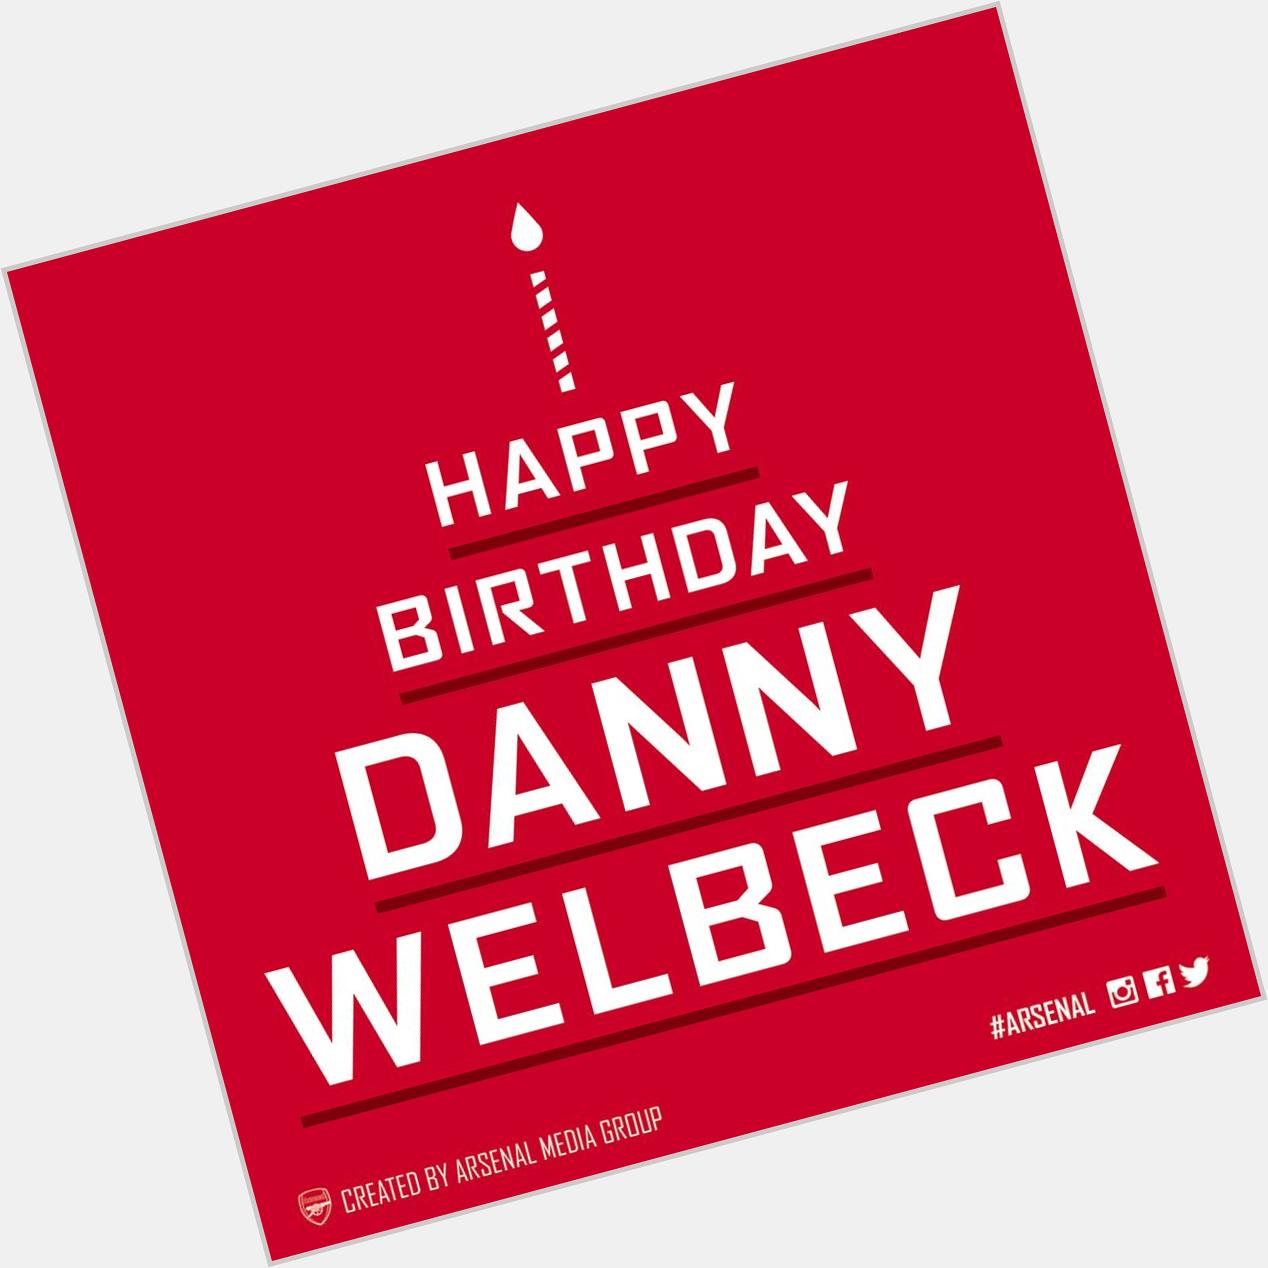 Happy birthday Danny Welbeck 